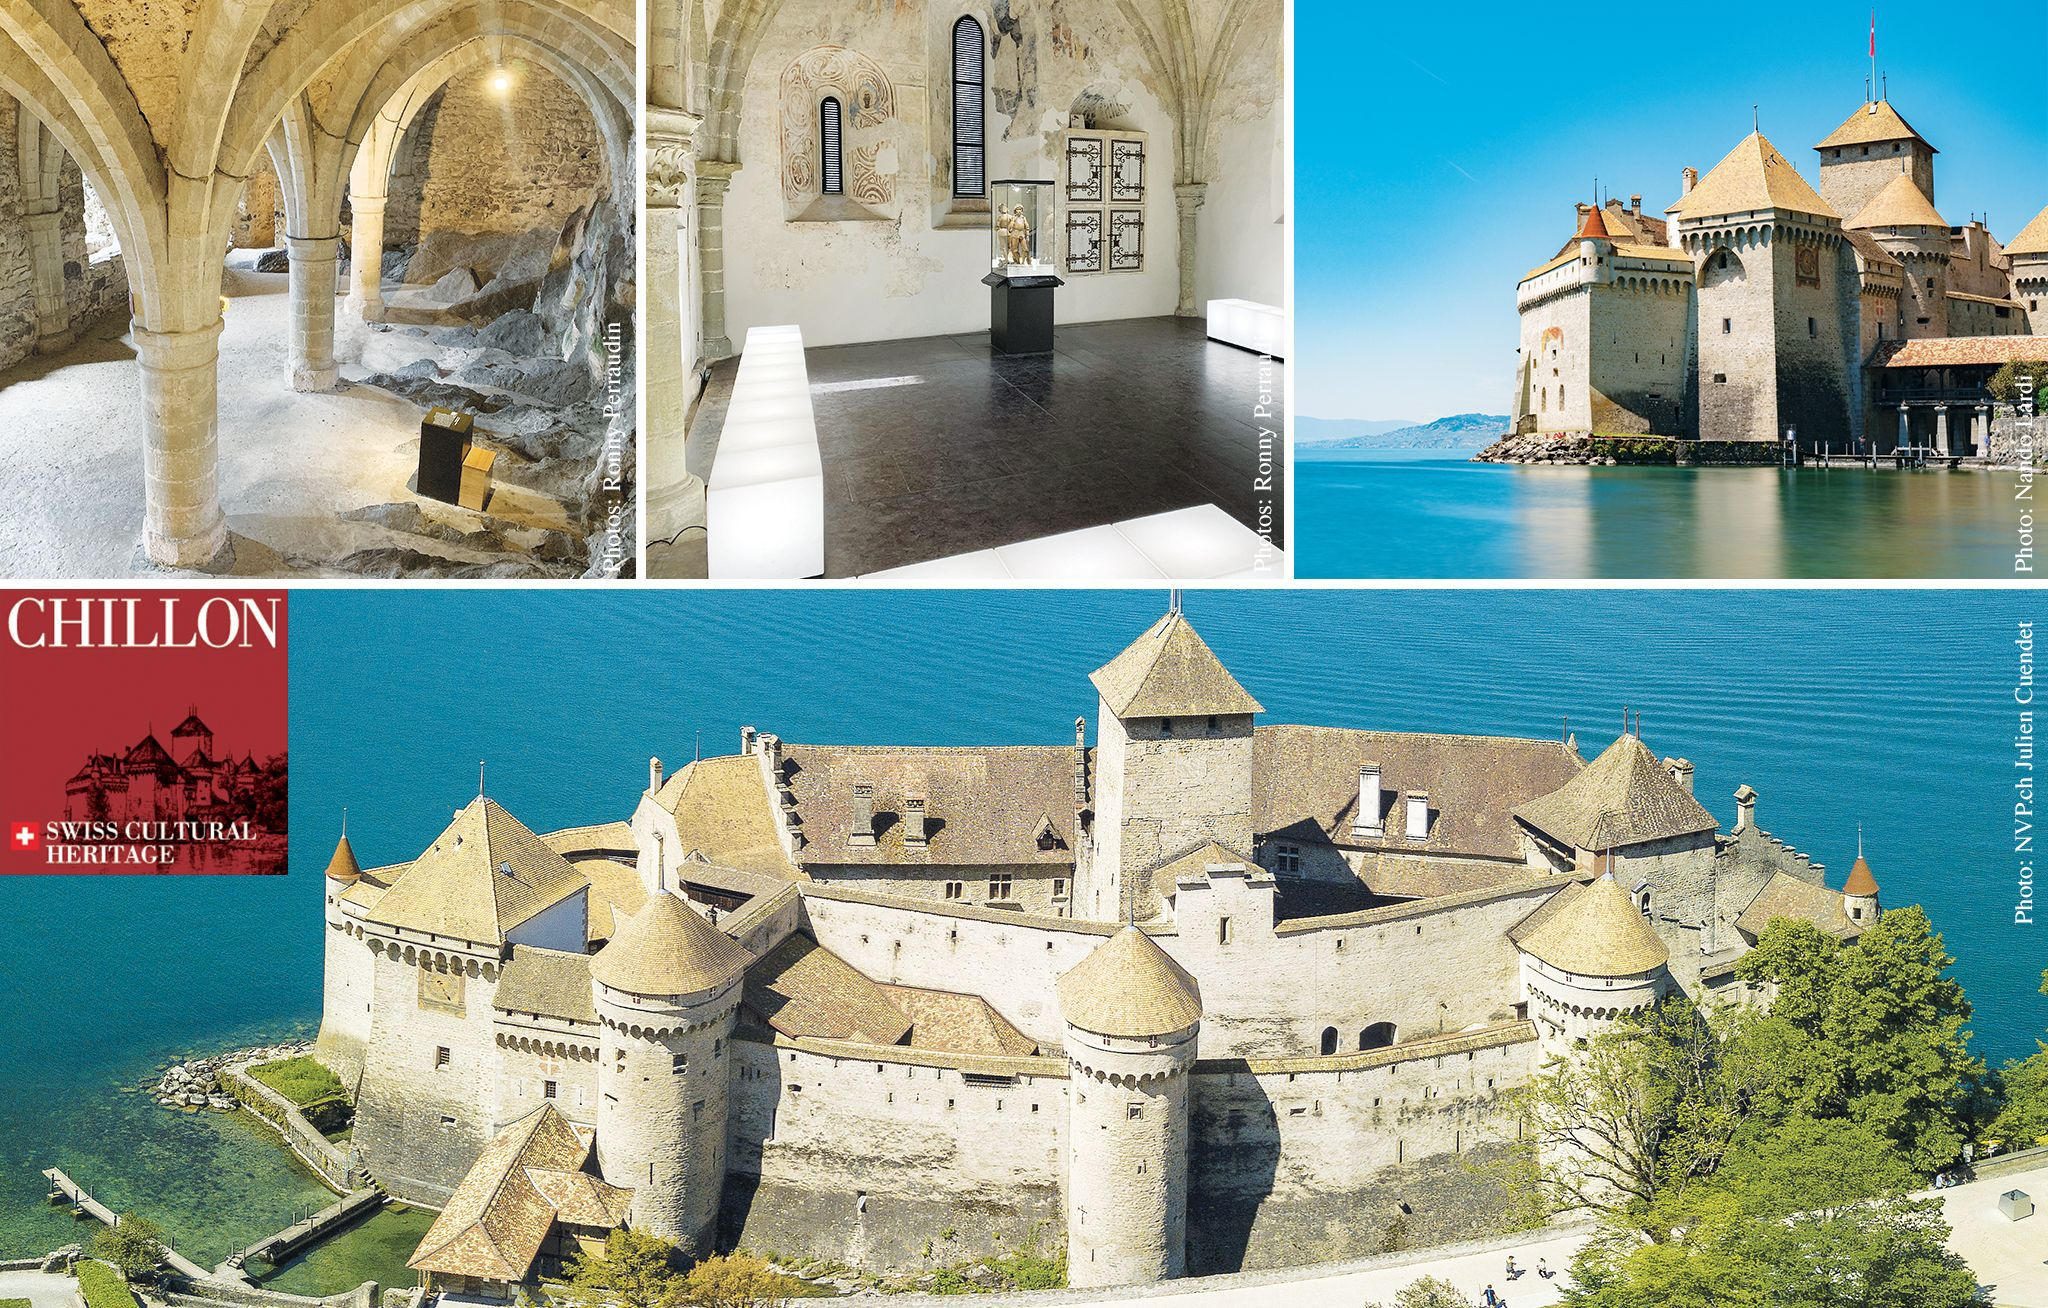 Chillon Le château médiéval et romantique à visiter absolument cChic Magazine - Prestige luxe culture art de vivre